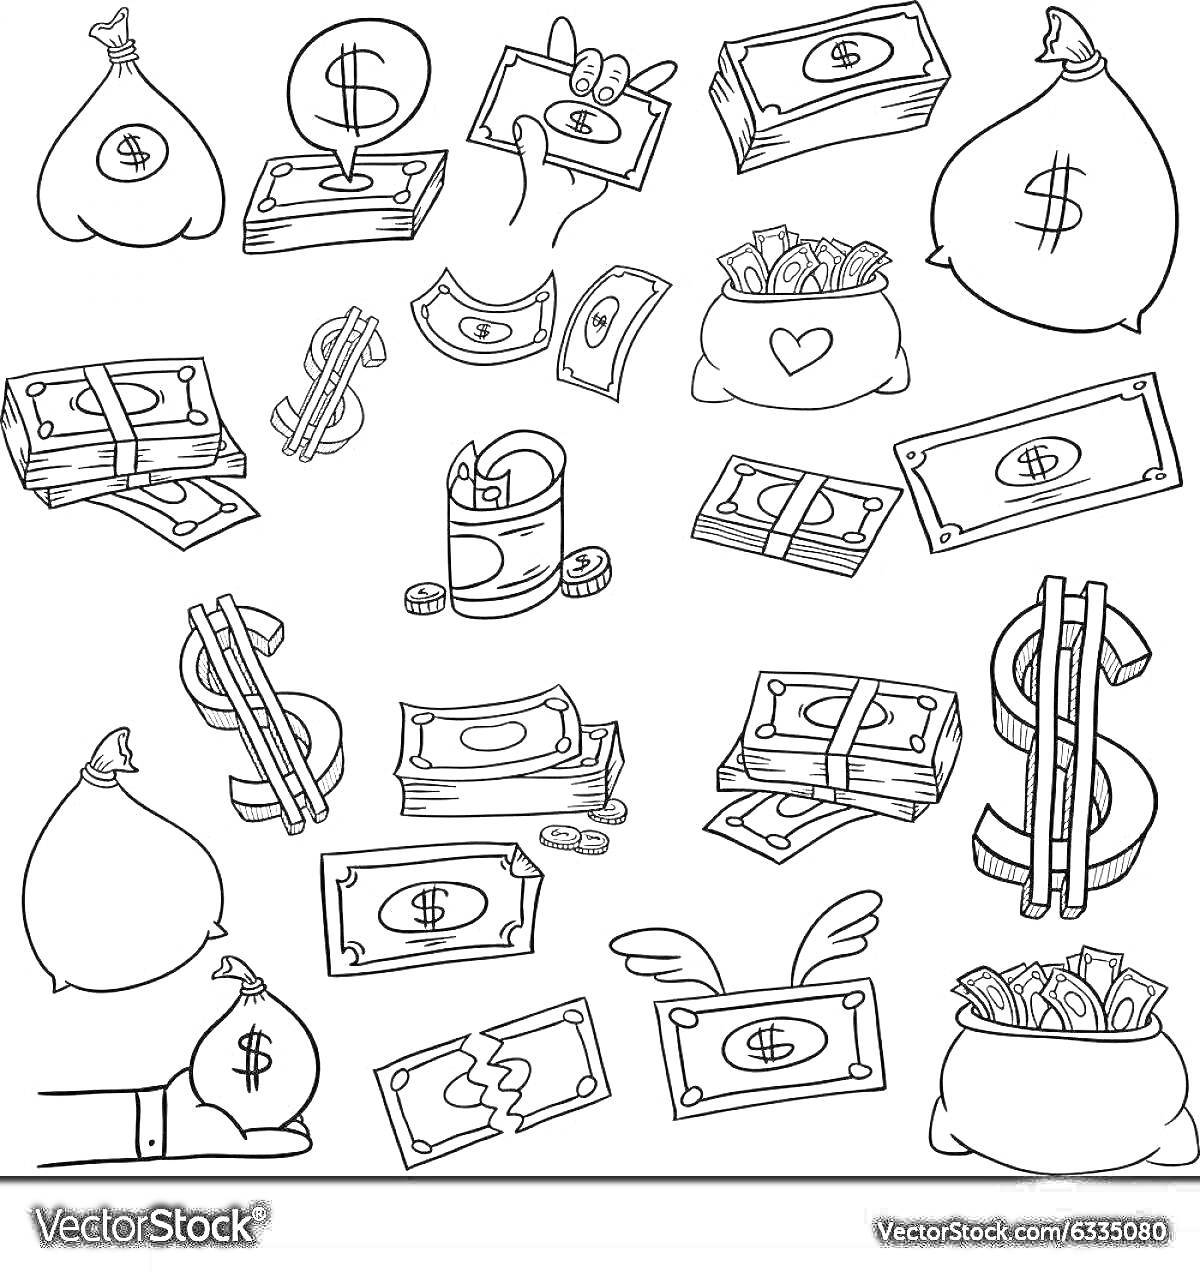 На раскраске изображено: Деньги, Доллары, Купюры, Монеты, Мешок денег, Копилка, Бумажник, Крылья